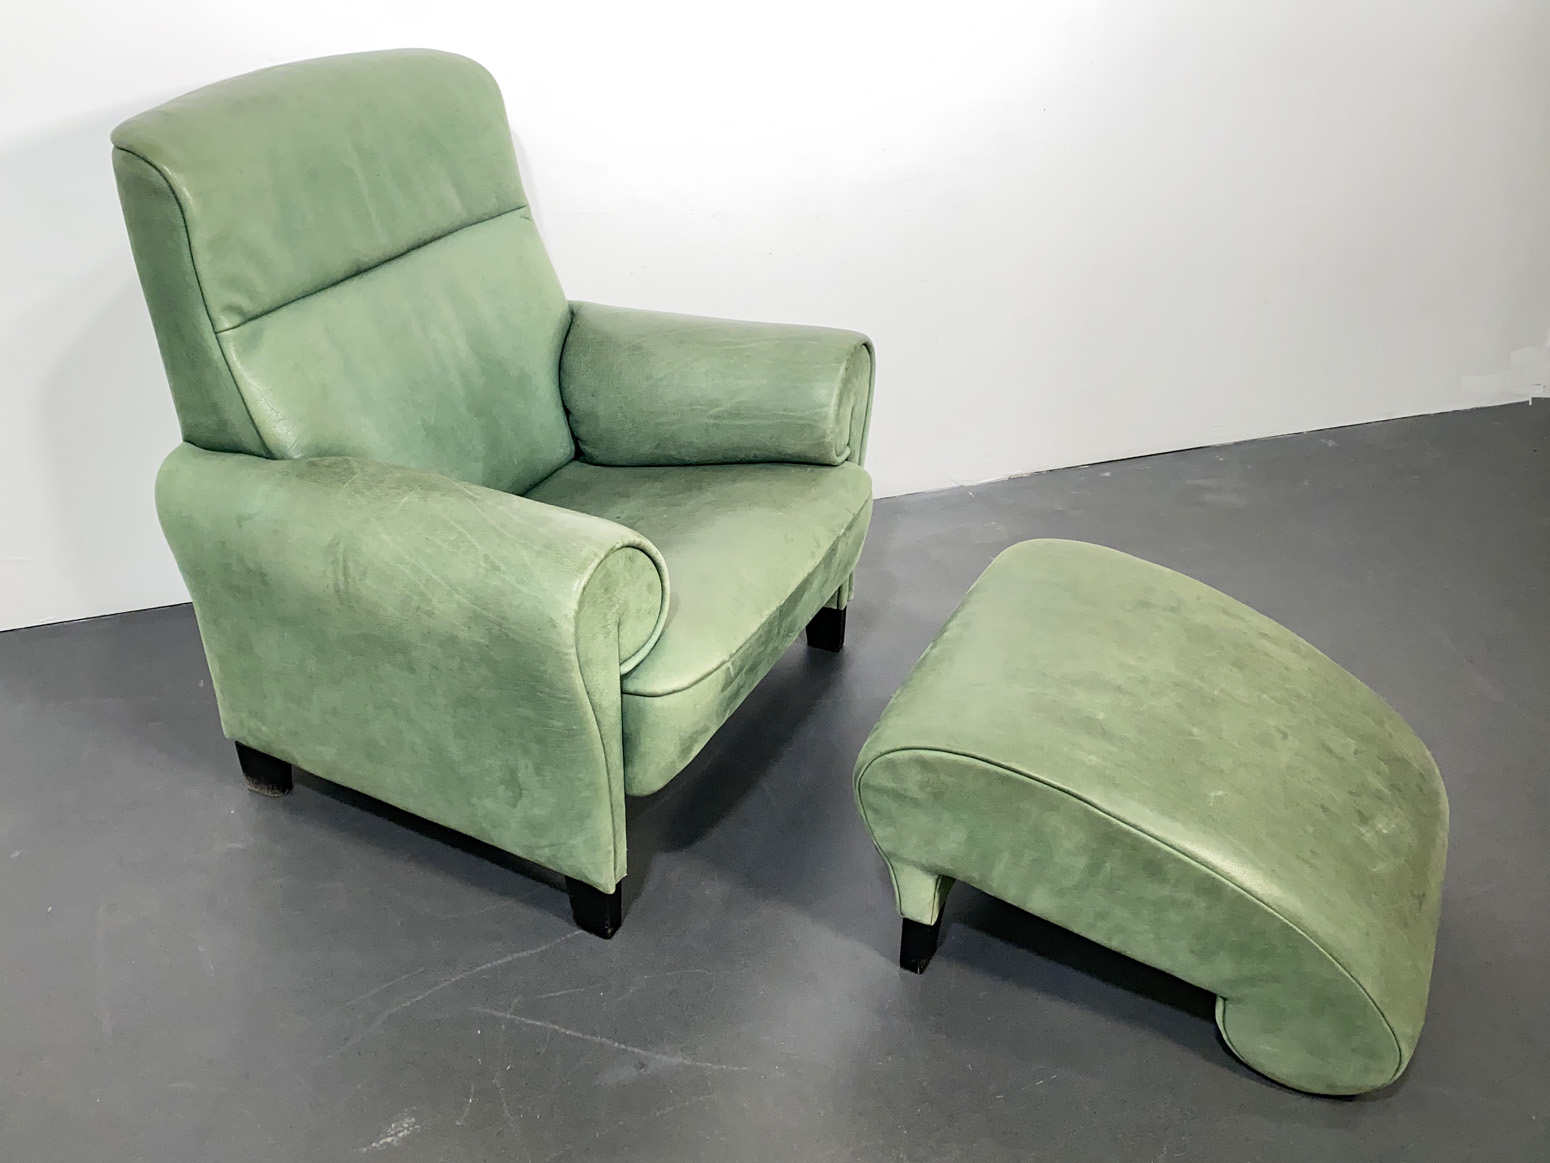 De Sede Sessel, Lounge Chair mit Ottomane DS-90, grünes Leder, von Anita Schmidt für De Sede, Schweiz, 1992.